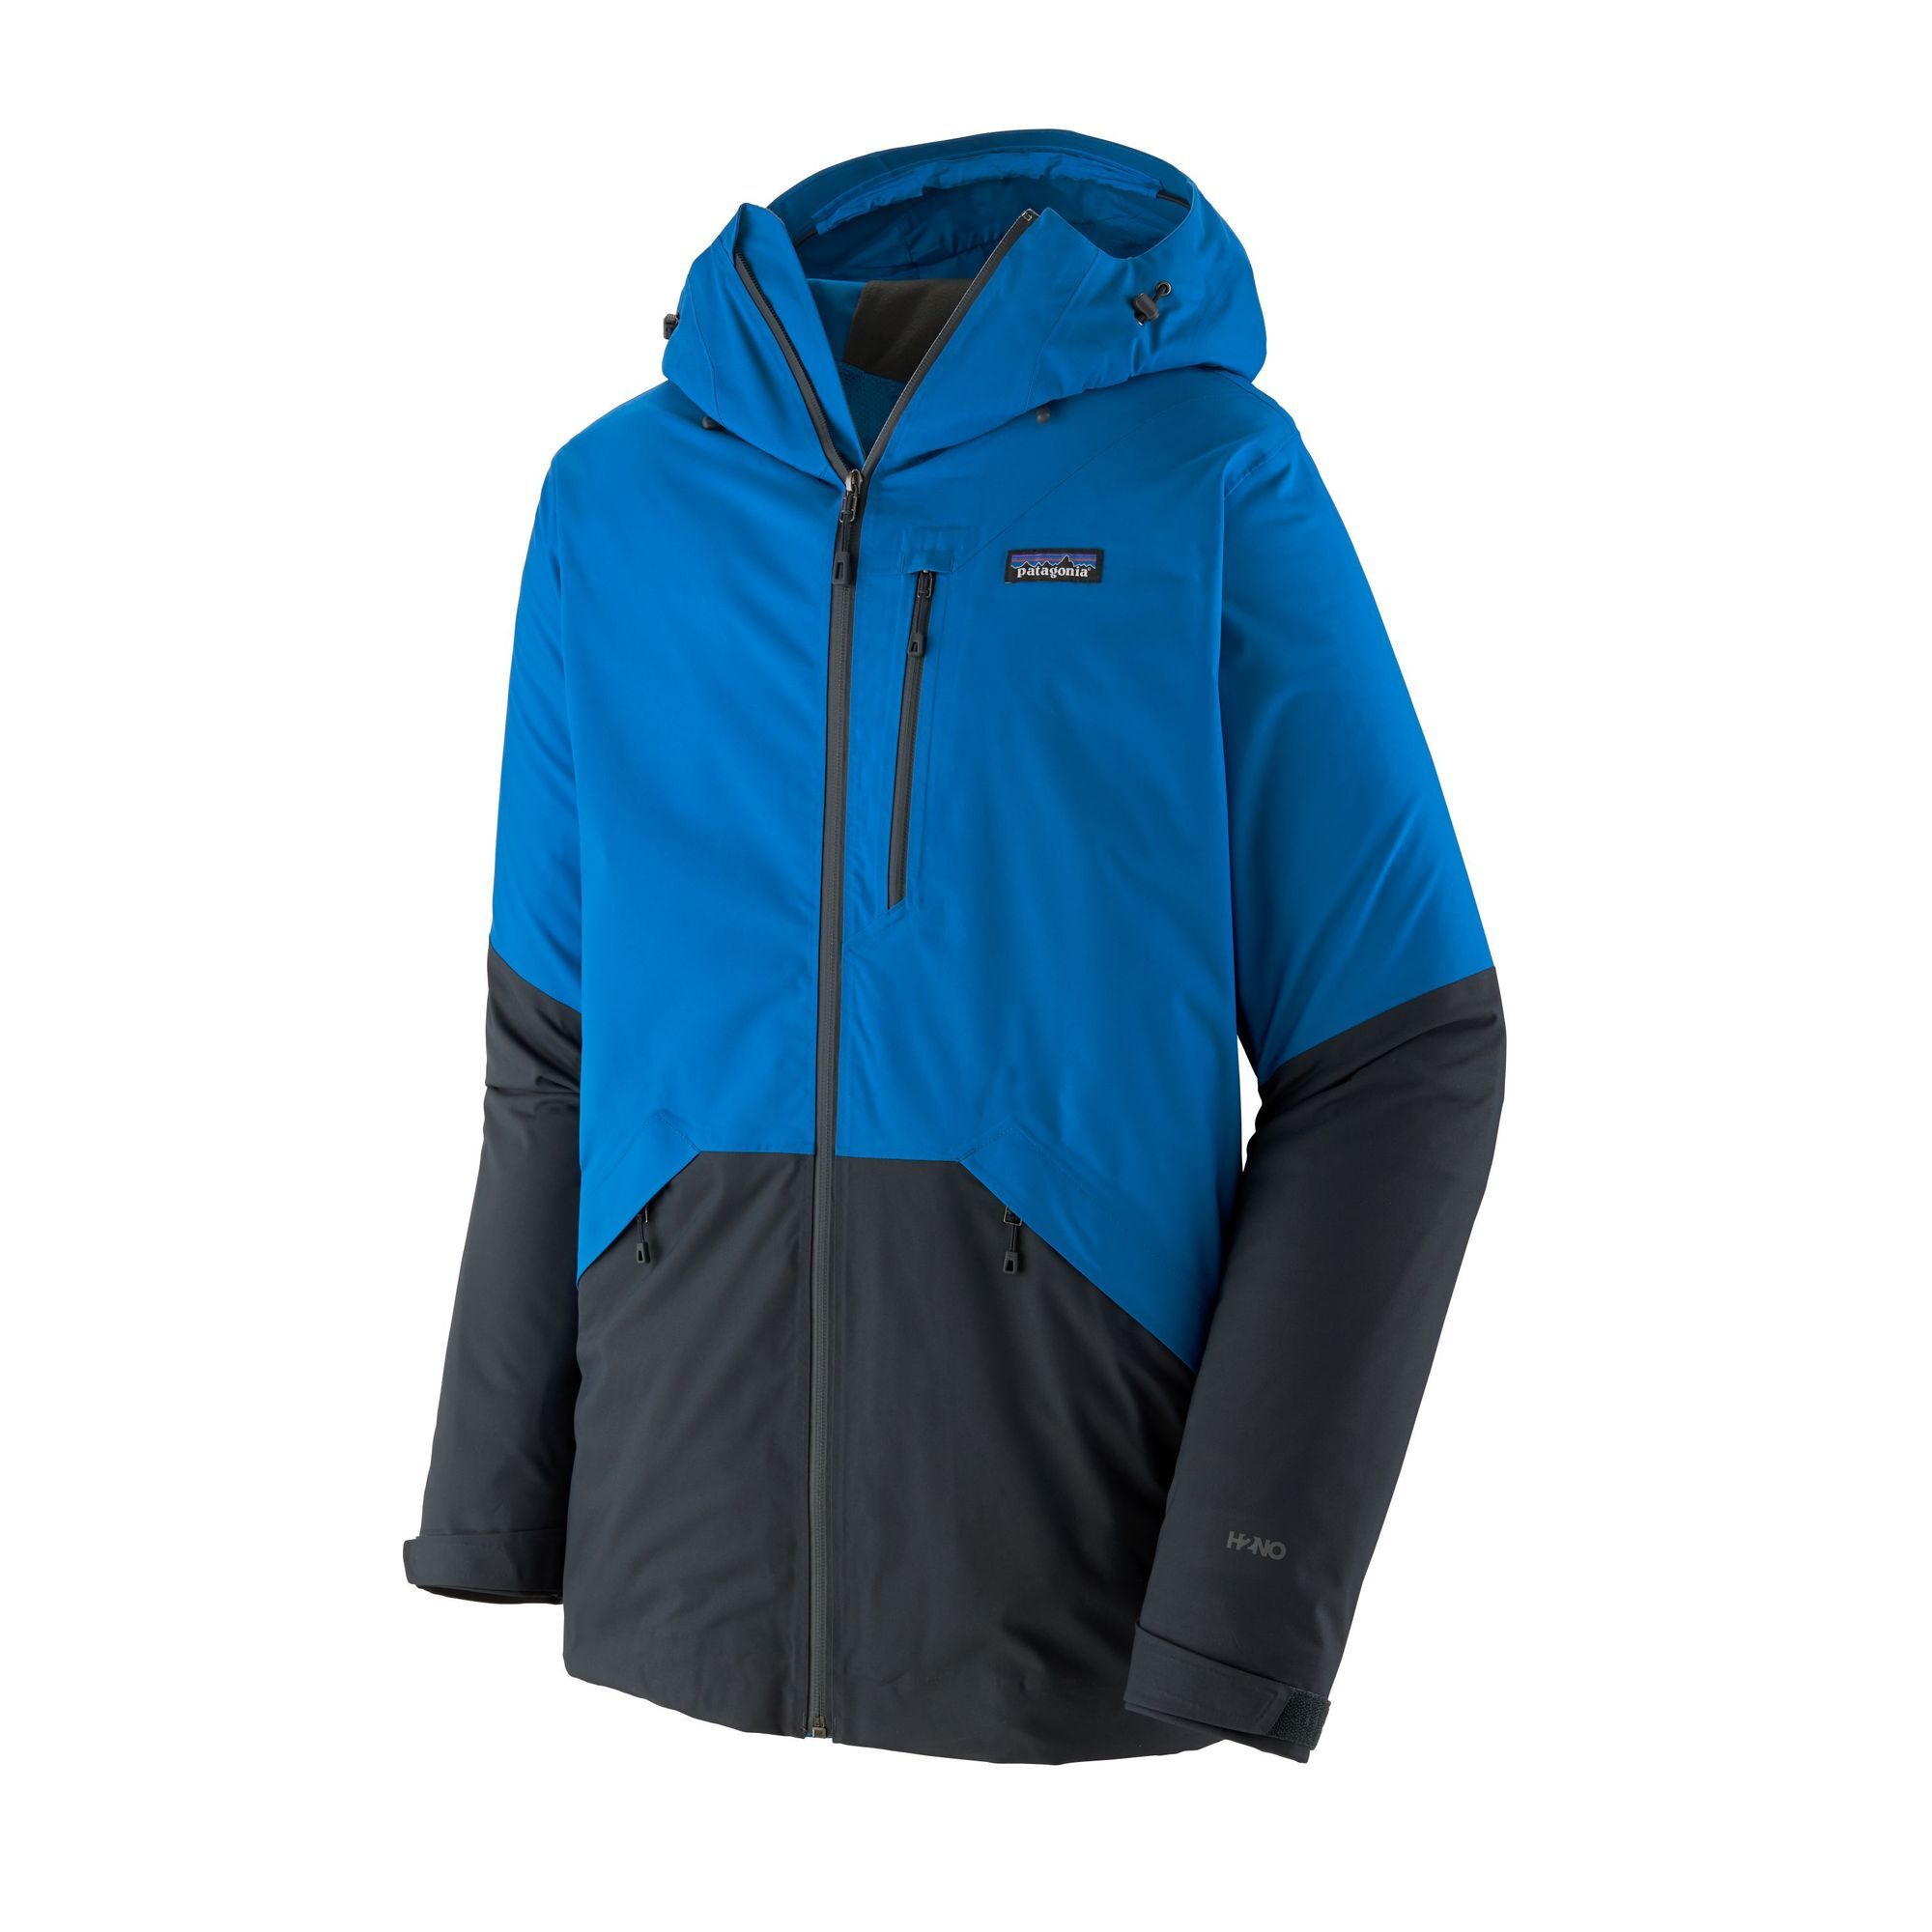 Patagonia - Snowshot Jacket - Ski jacket - Men's